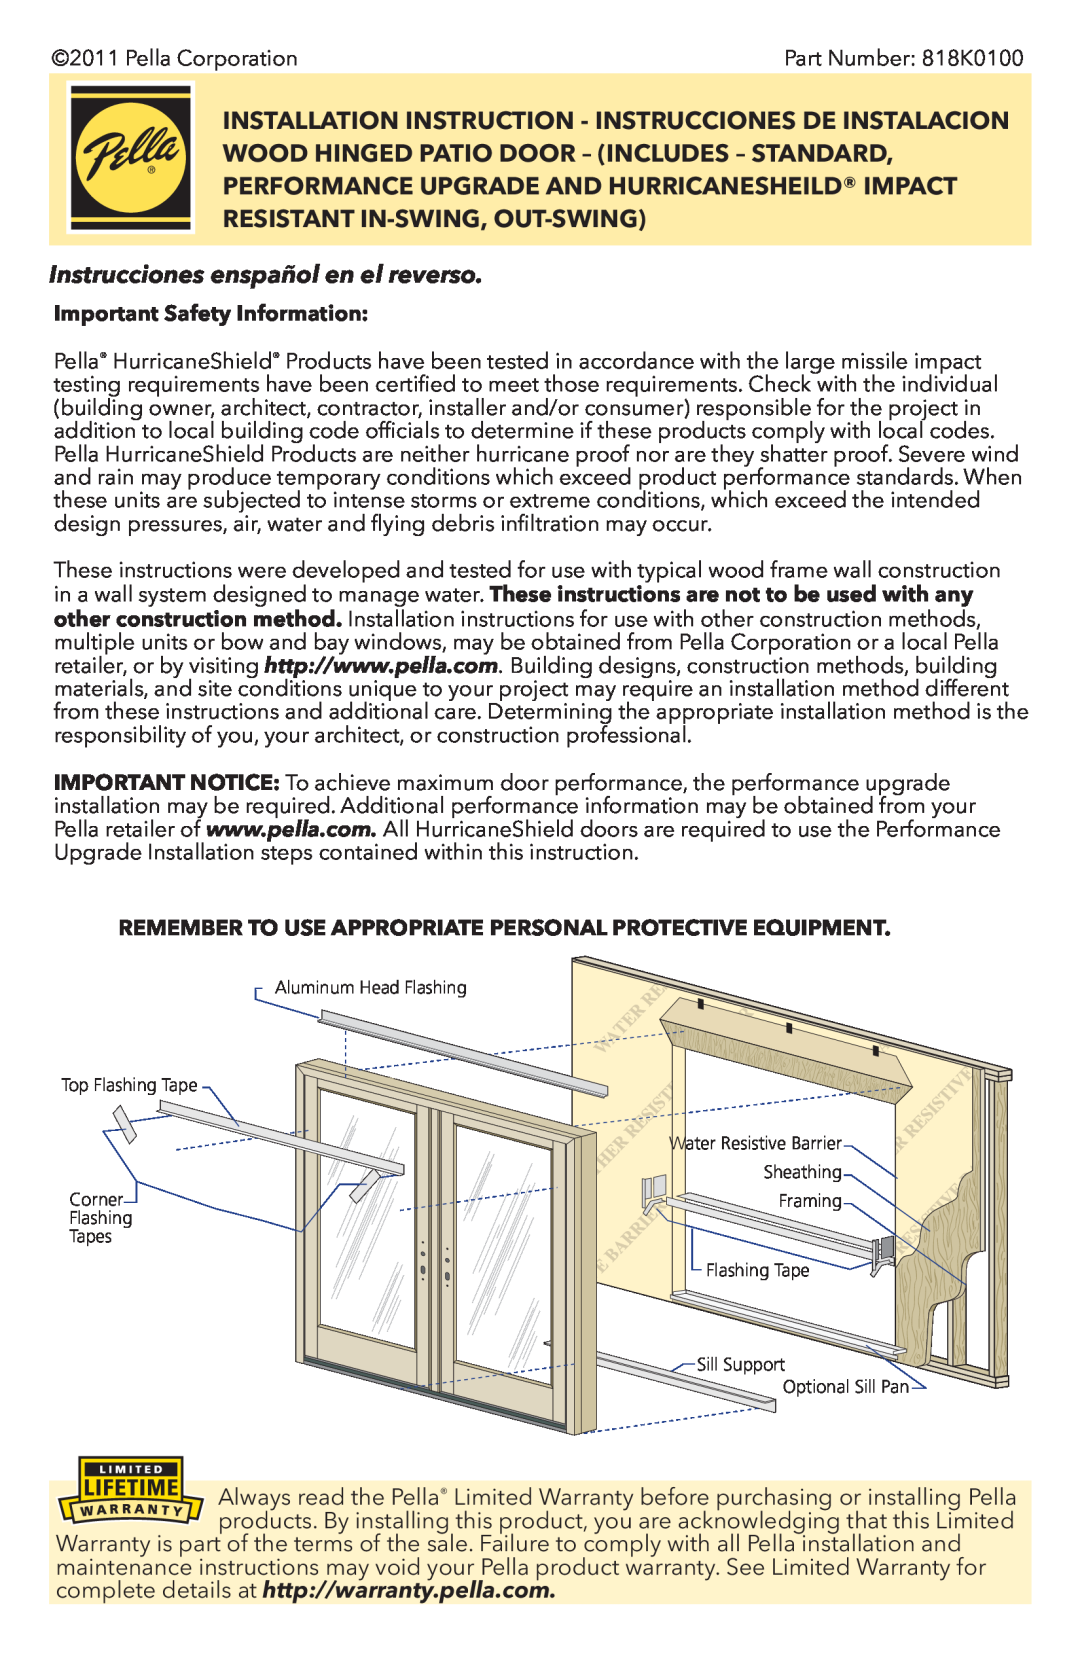 Pella 818K0100 installation instructions Instrucciones enspañol en el reverso, Important Safety Information 